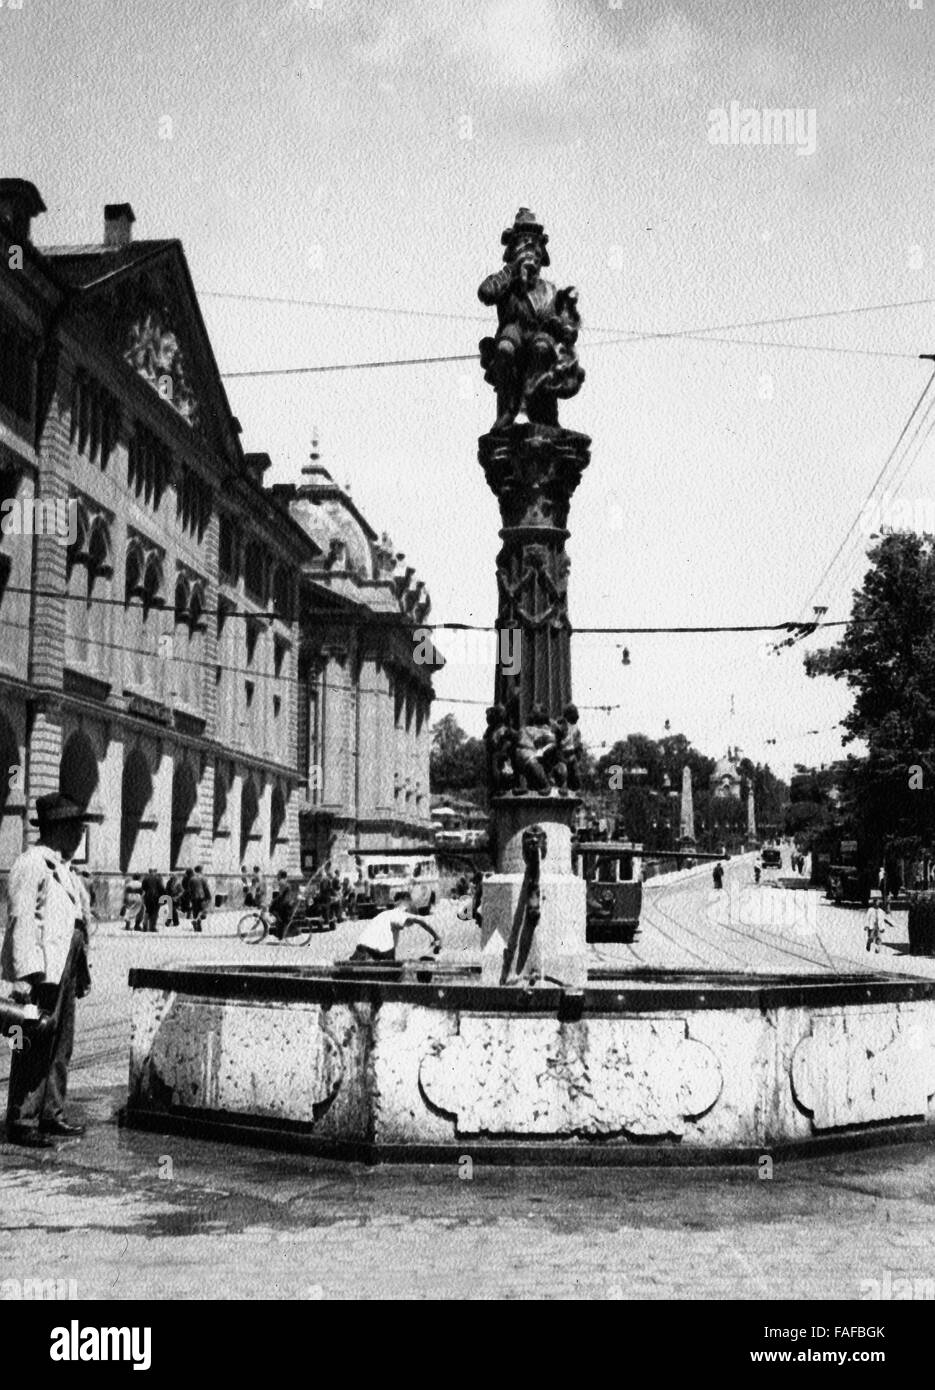 Der Kindlifresserbrunnen in Bern, Schweiz 1930er Jahre. Child Eater Fountain at the city of Berne, Switzerland 1930s. Stock Photo